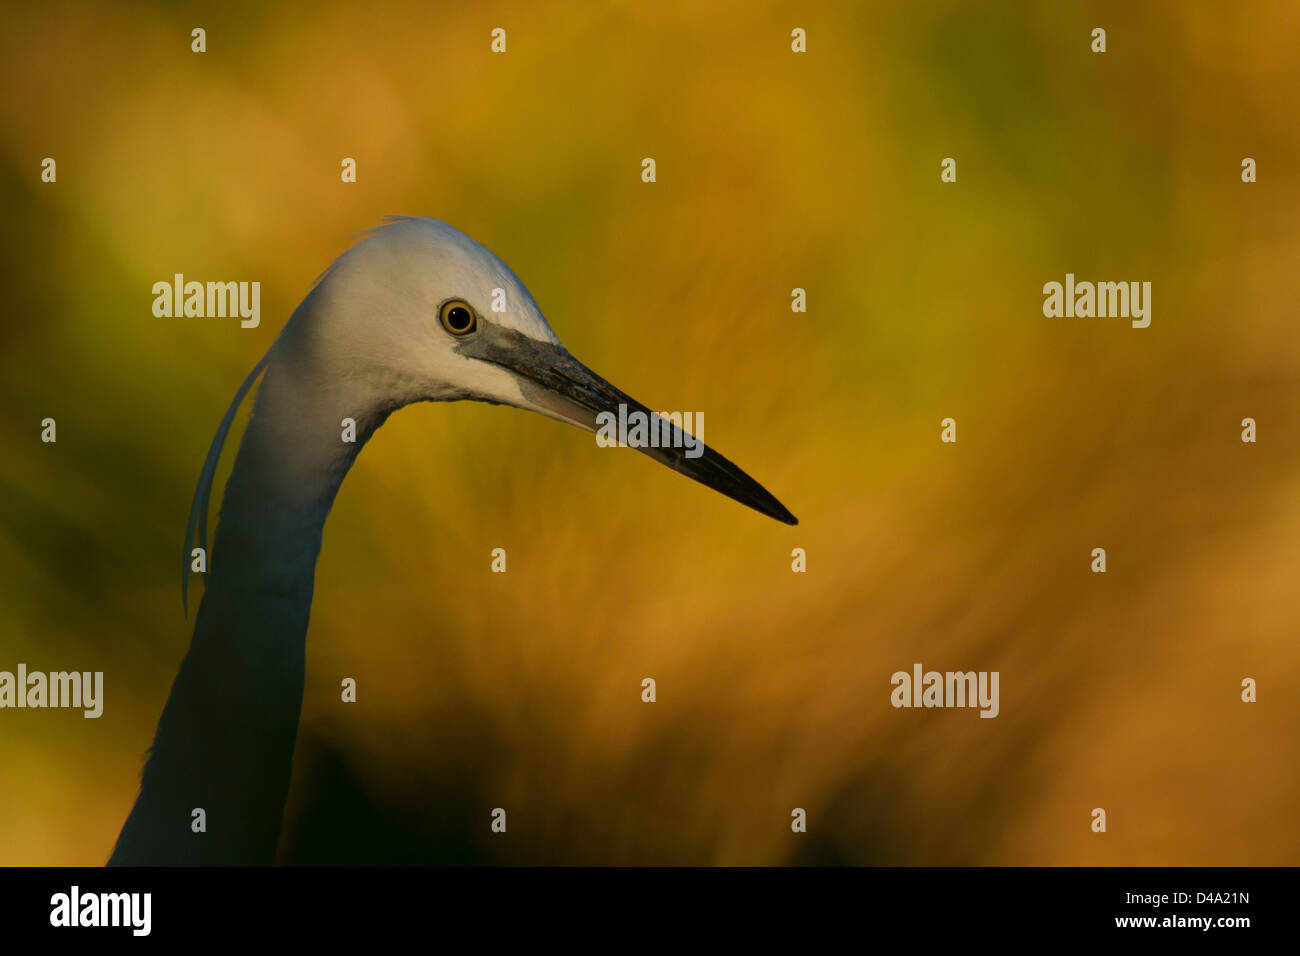 A portrait of Little egret Stock Photo